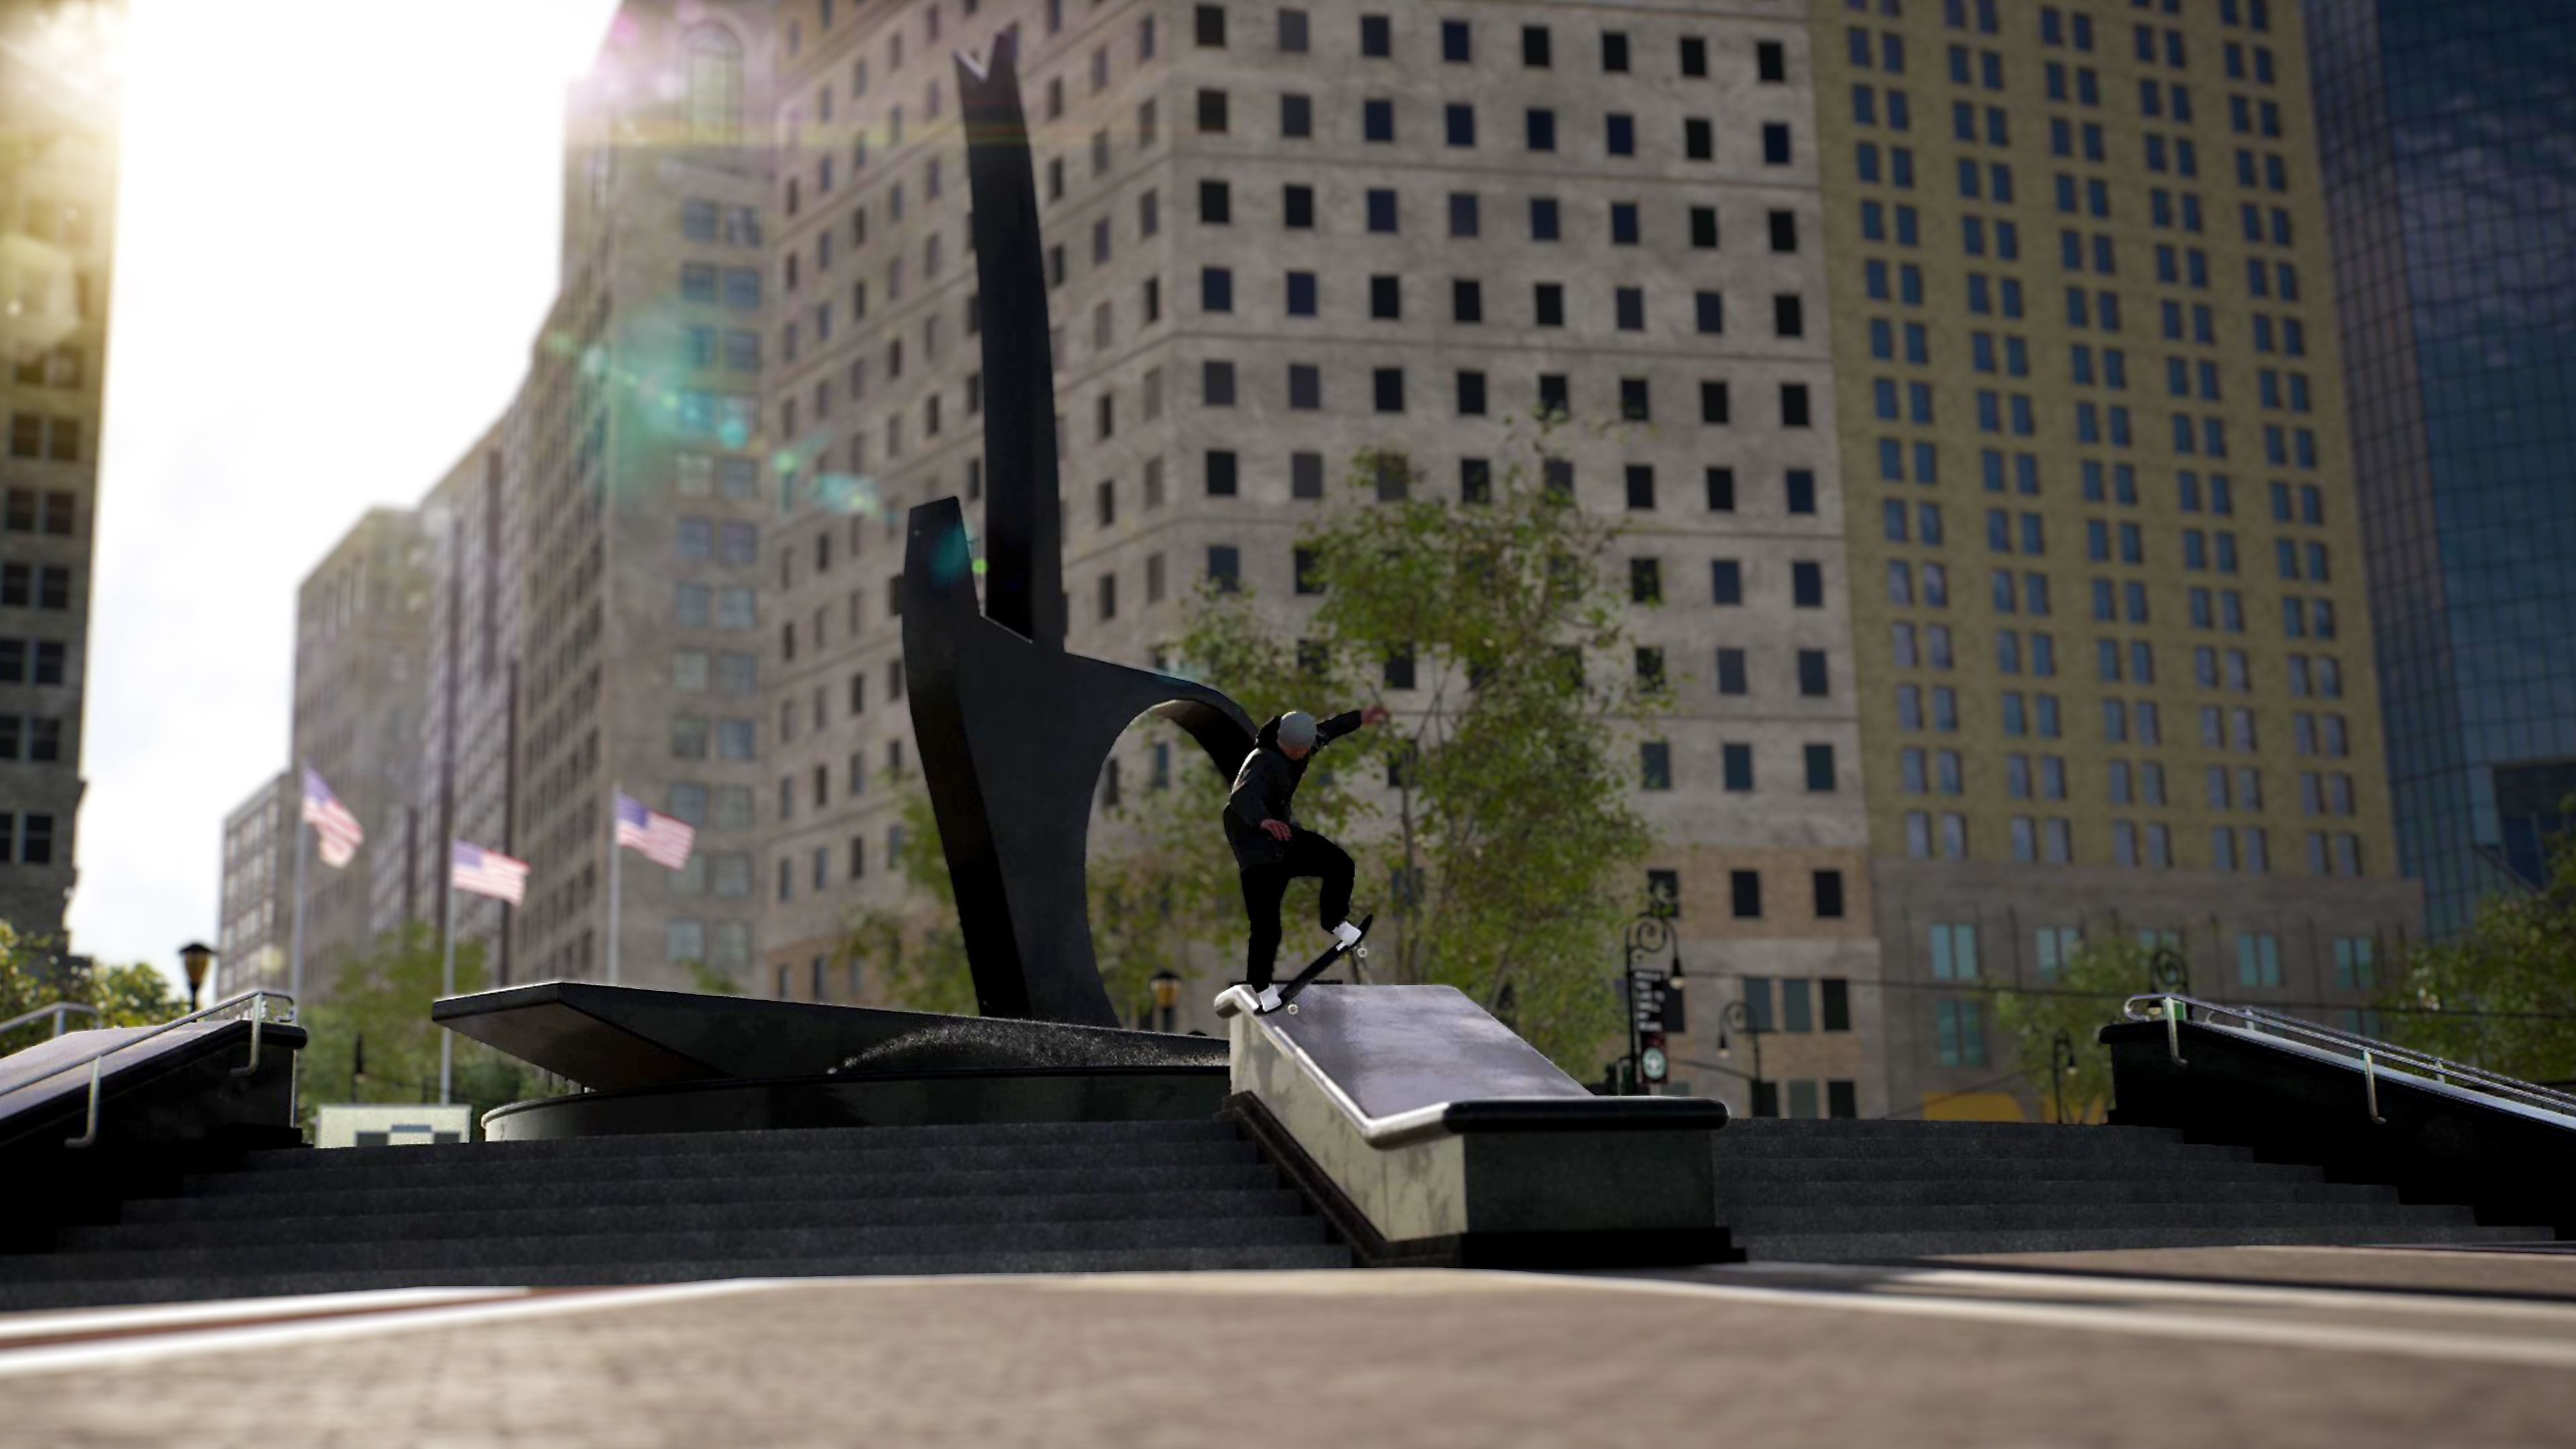 Session: Skate Sim-skærmbillede, der viser en skater, der grinder langs en kant på et torv